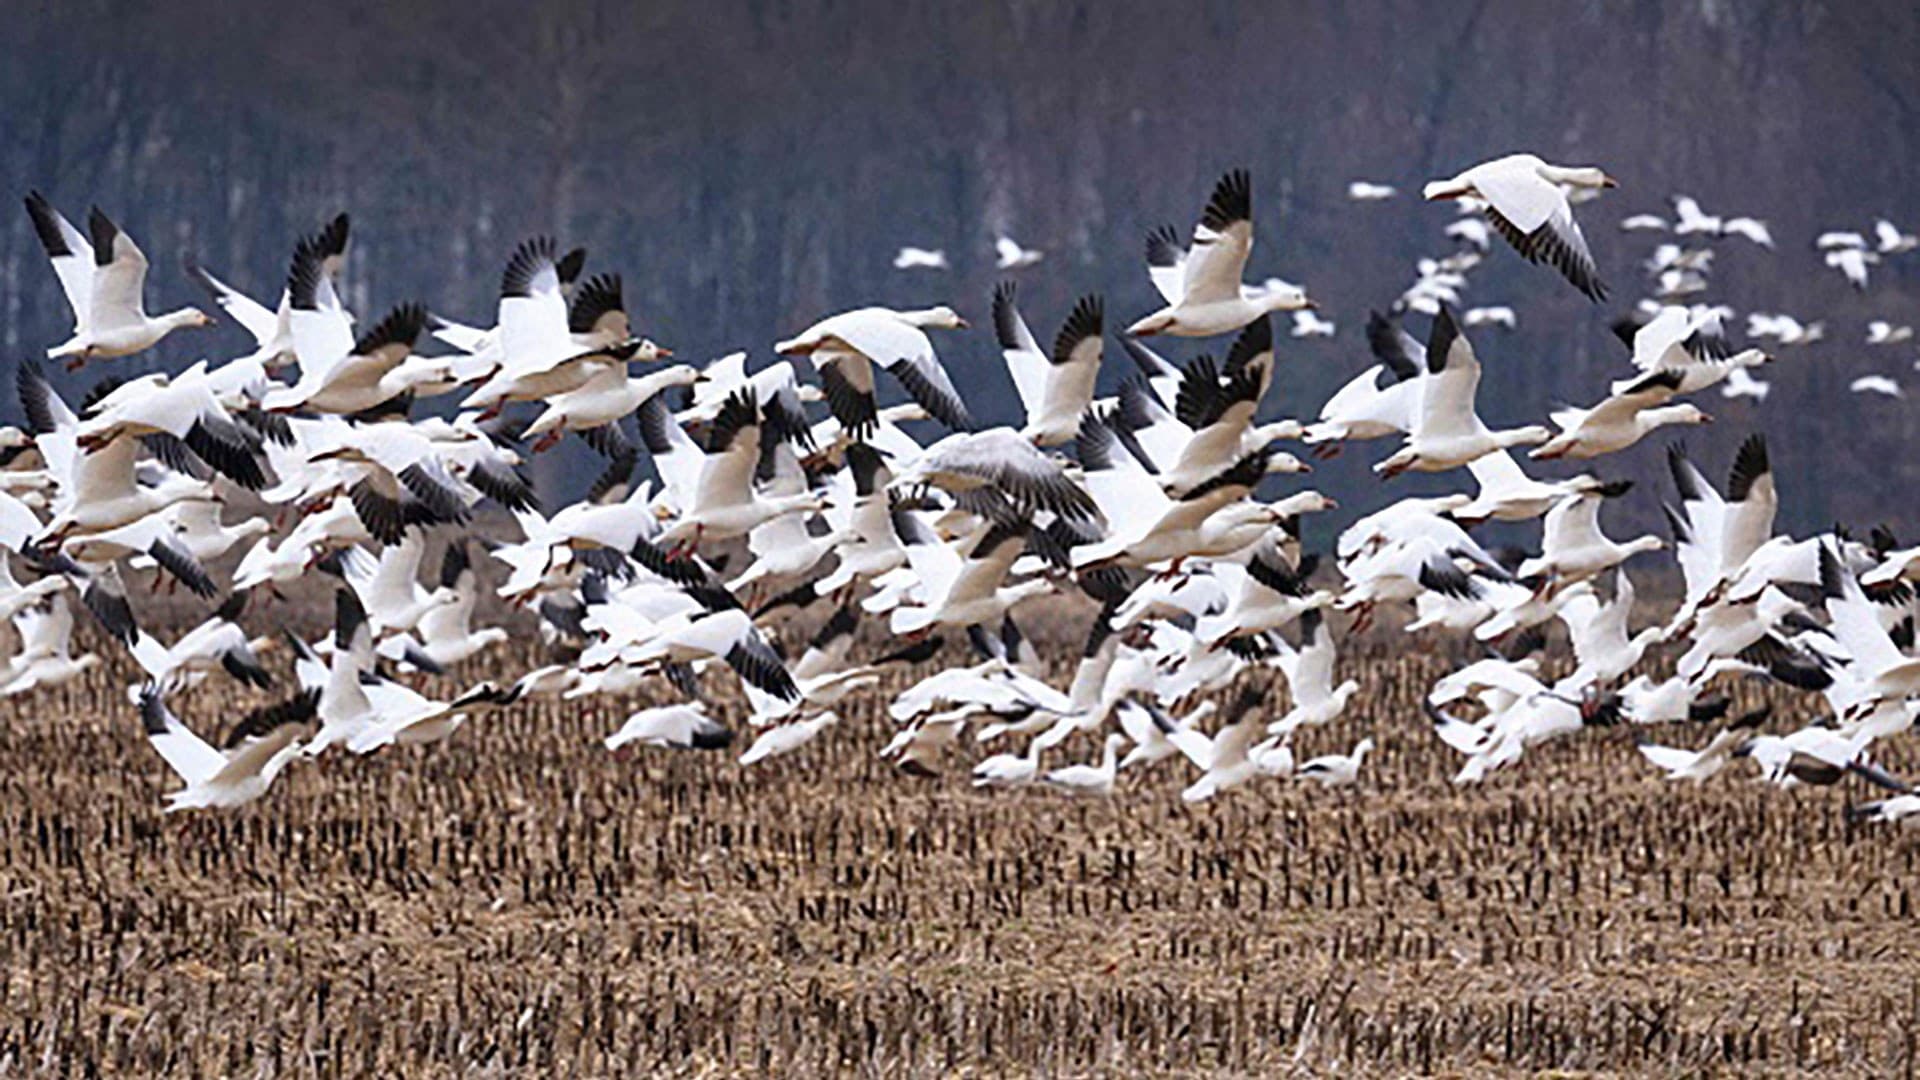 snow geese take flight in field